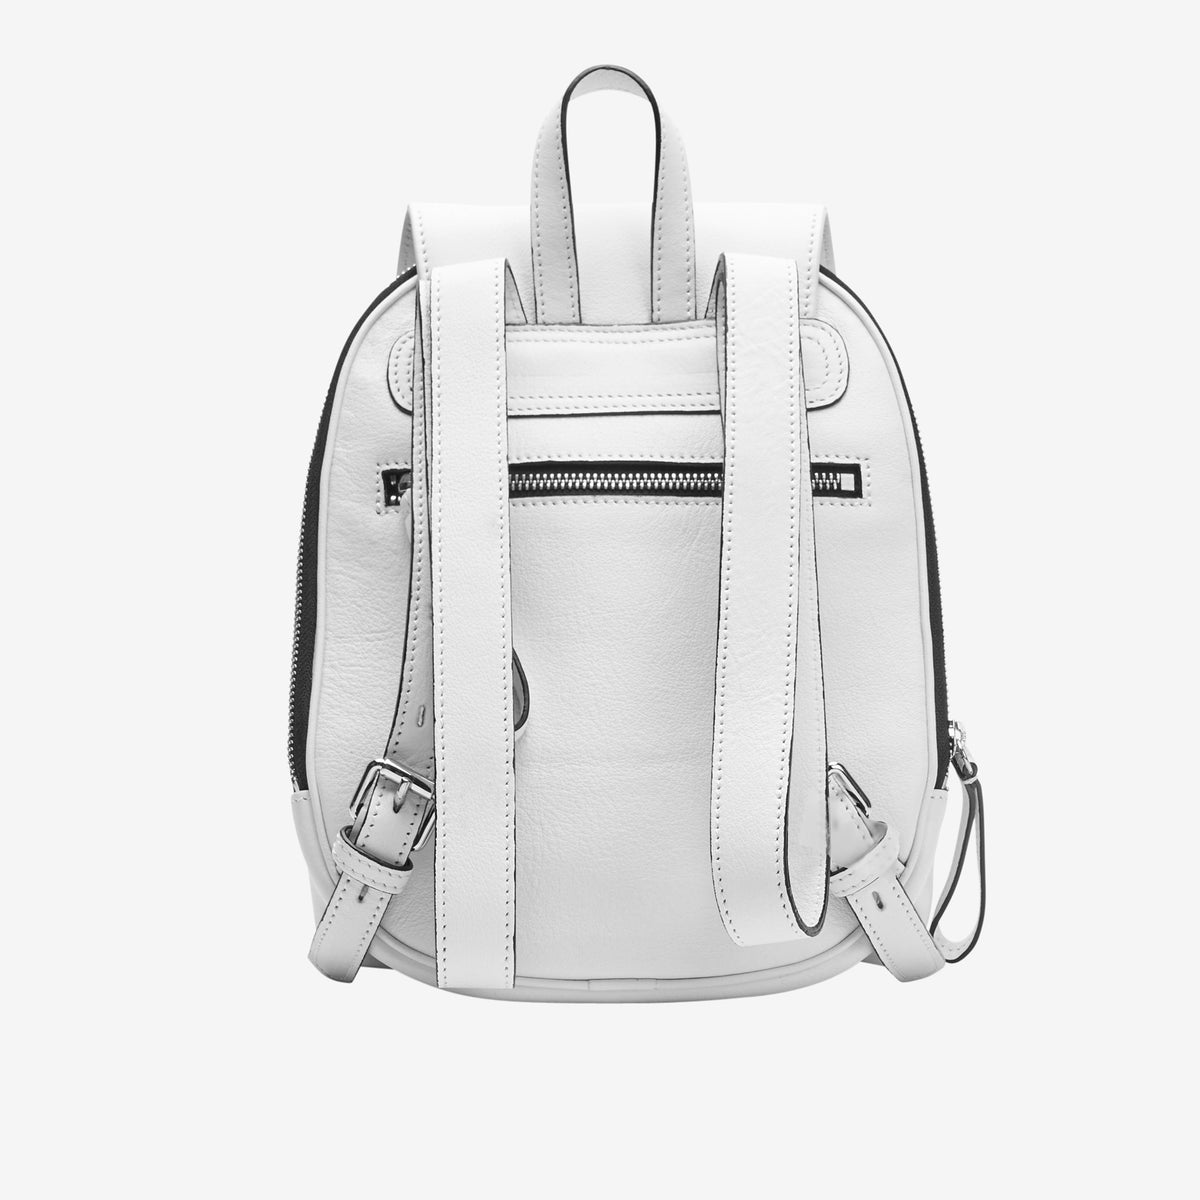     tusk-9898-rupi-pebblegrain-leather-backpack-white-back